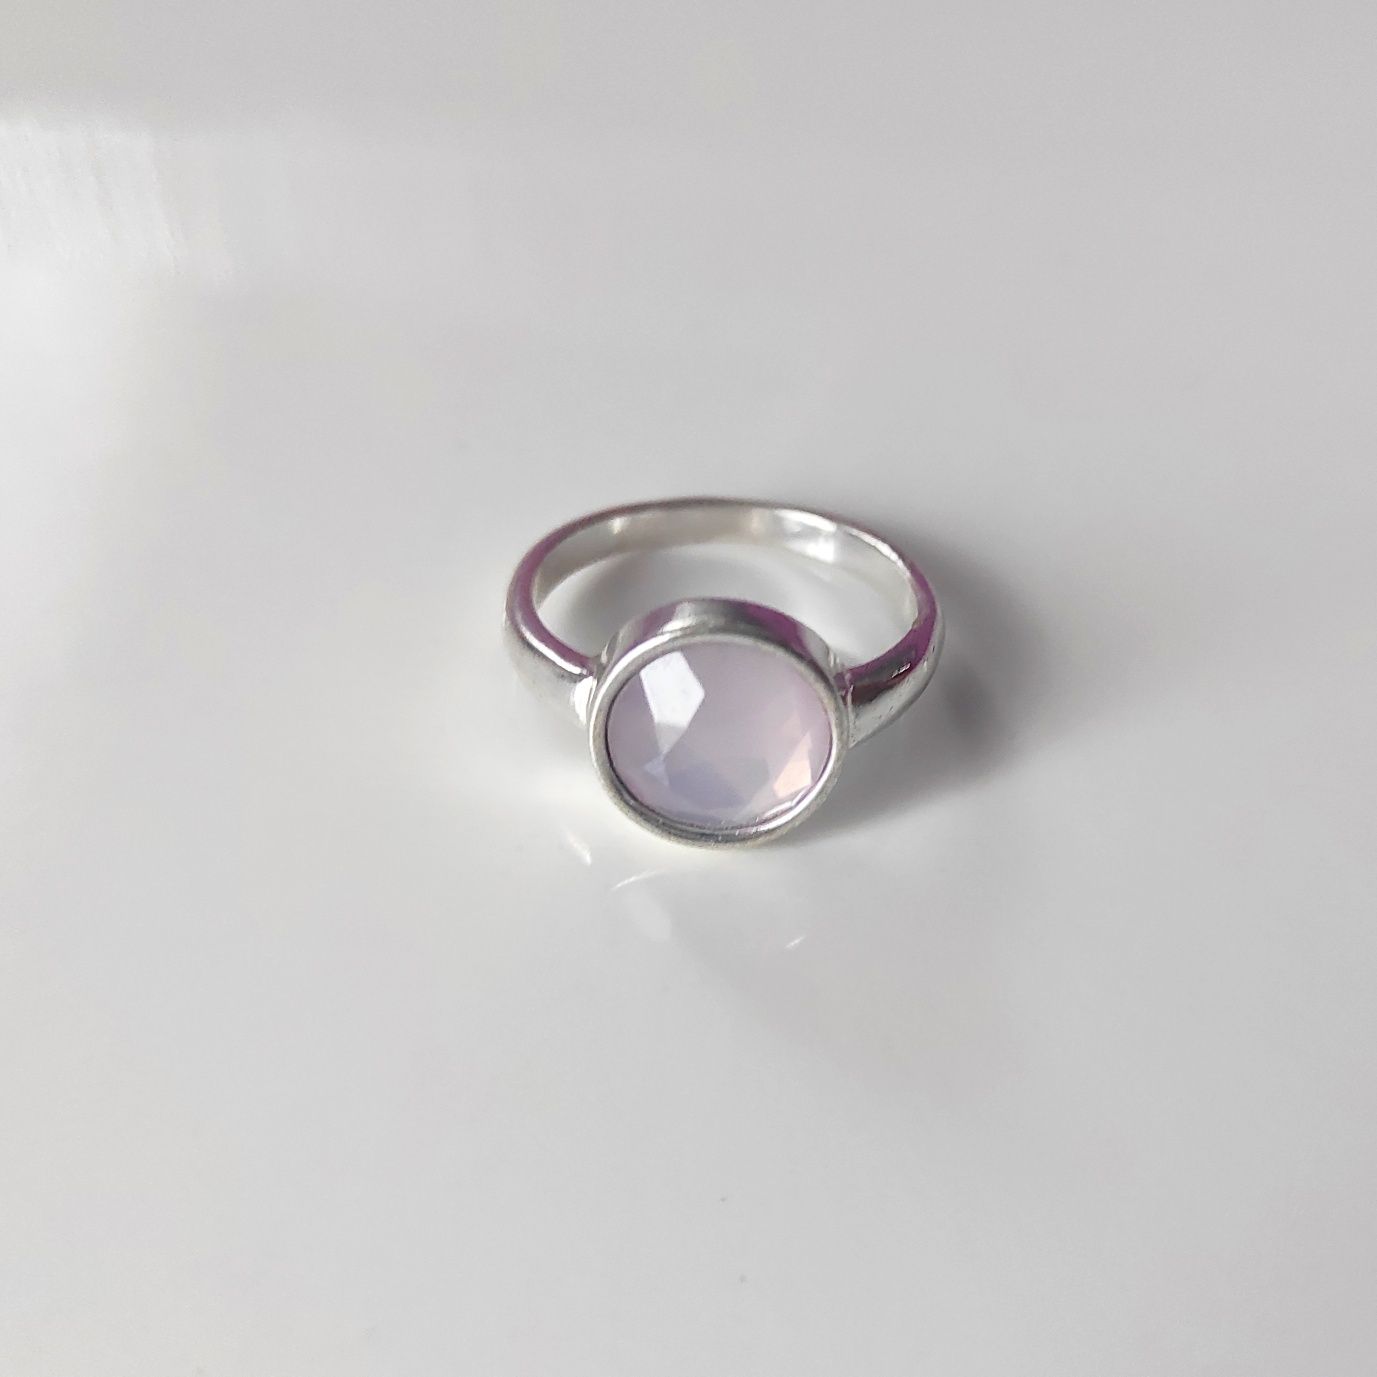 Pierścionek w kolorze srebrnym z jasnym, różowym oczkiem, rozmiar 19